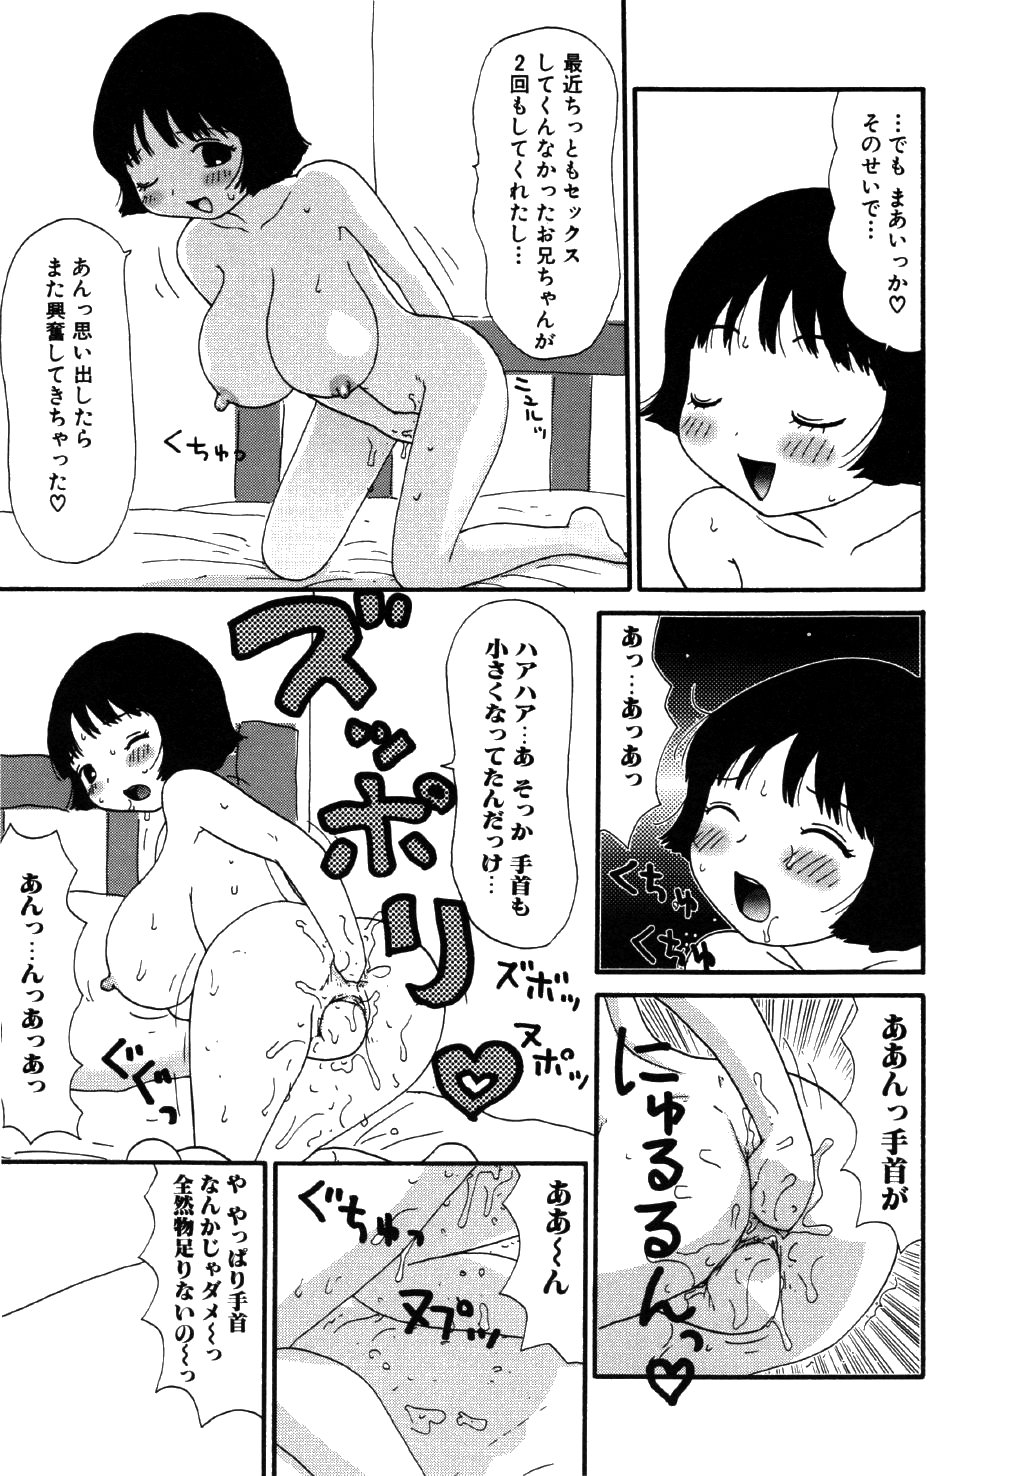 [Machino Henmaru] little yumiko chan page 13 full